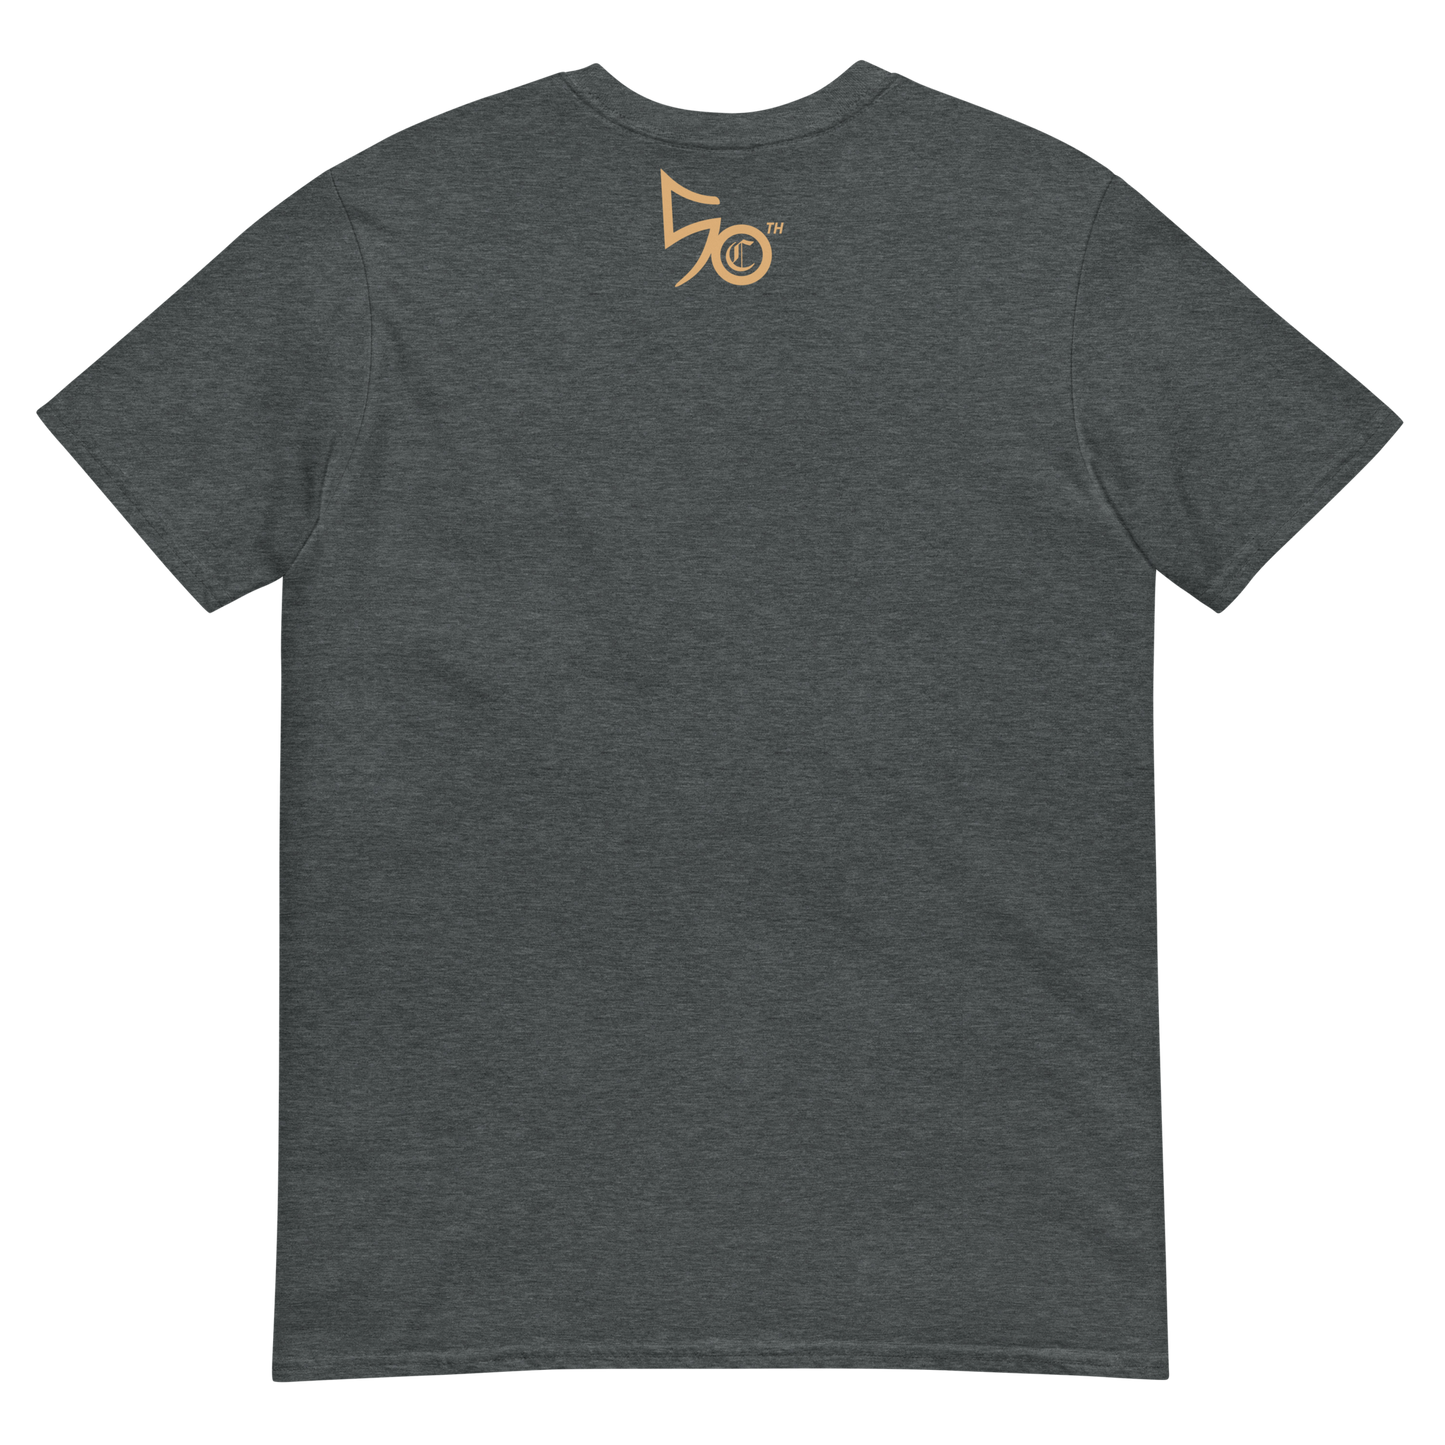 50th Member Short-Sleeve Unisex T-Shirt